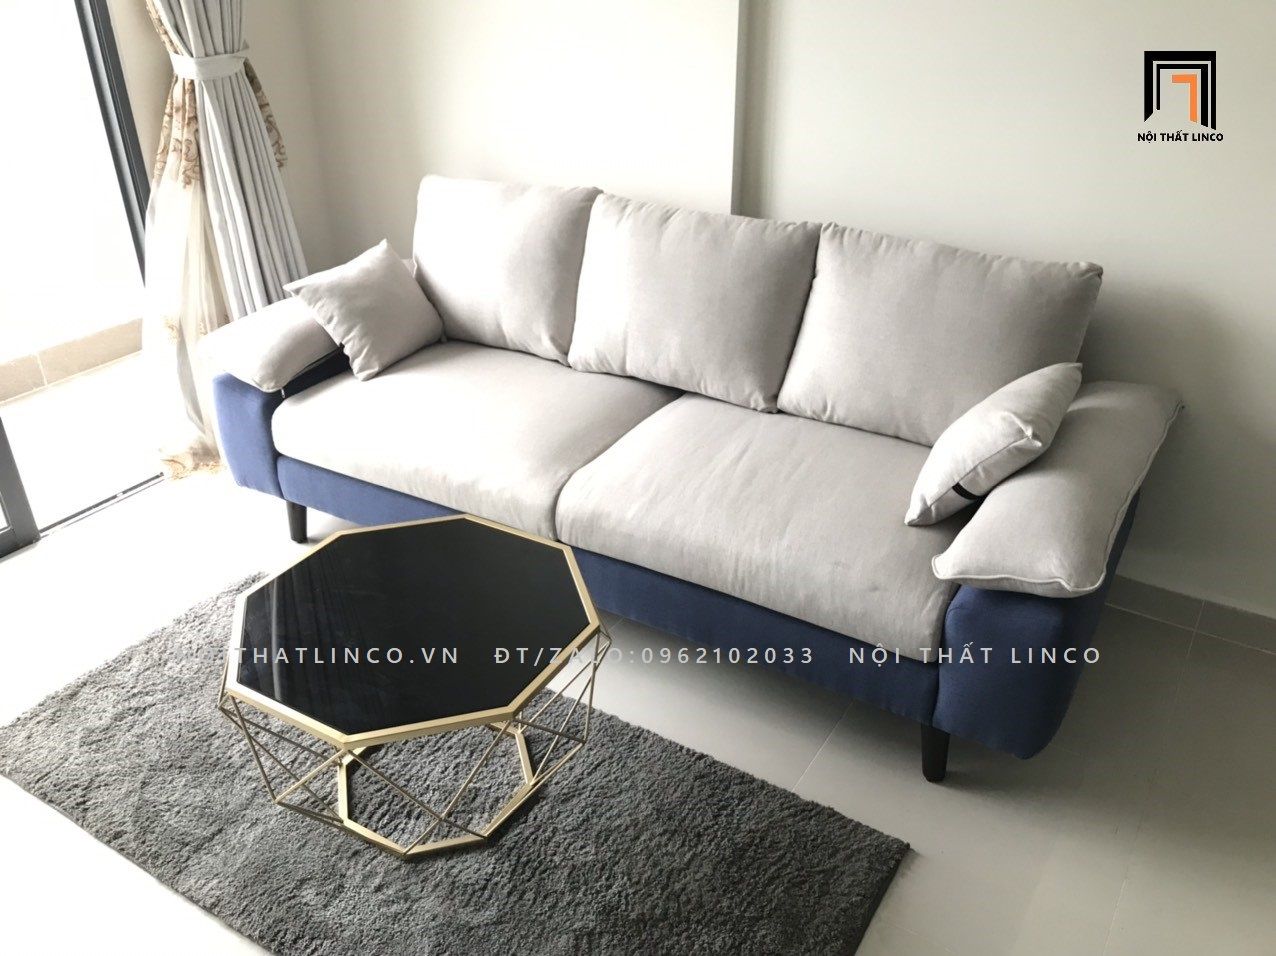  Bộ ghế sofa văng 2m2 BT43-Roam phối màu sắc trẻ trung 